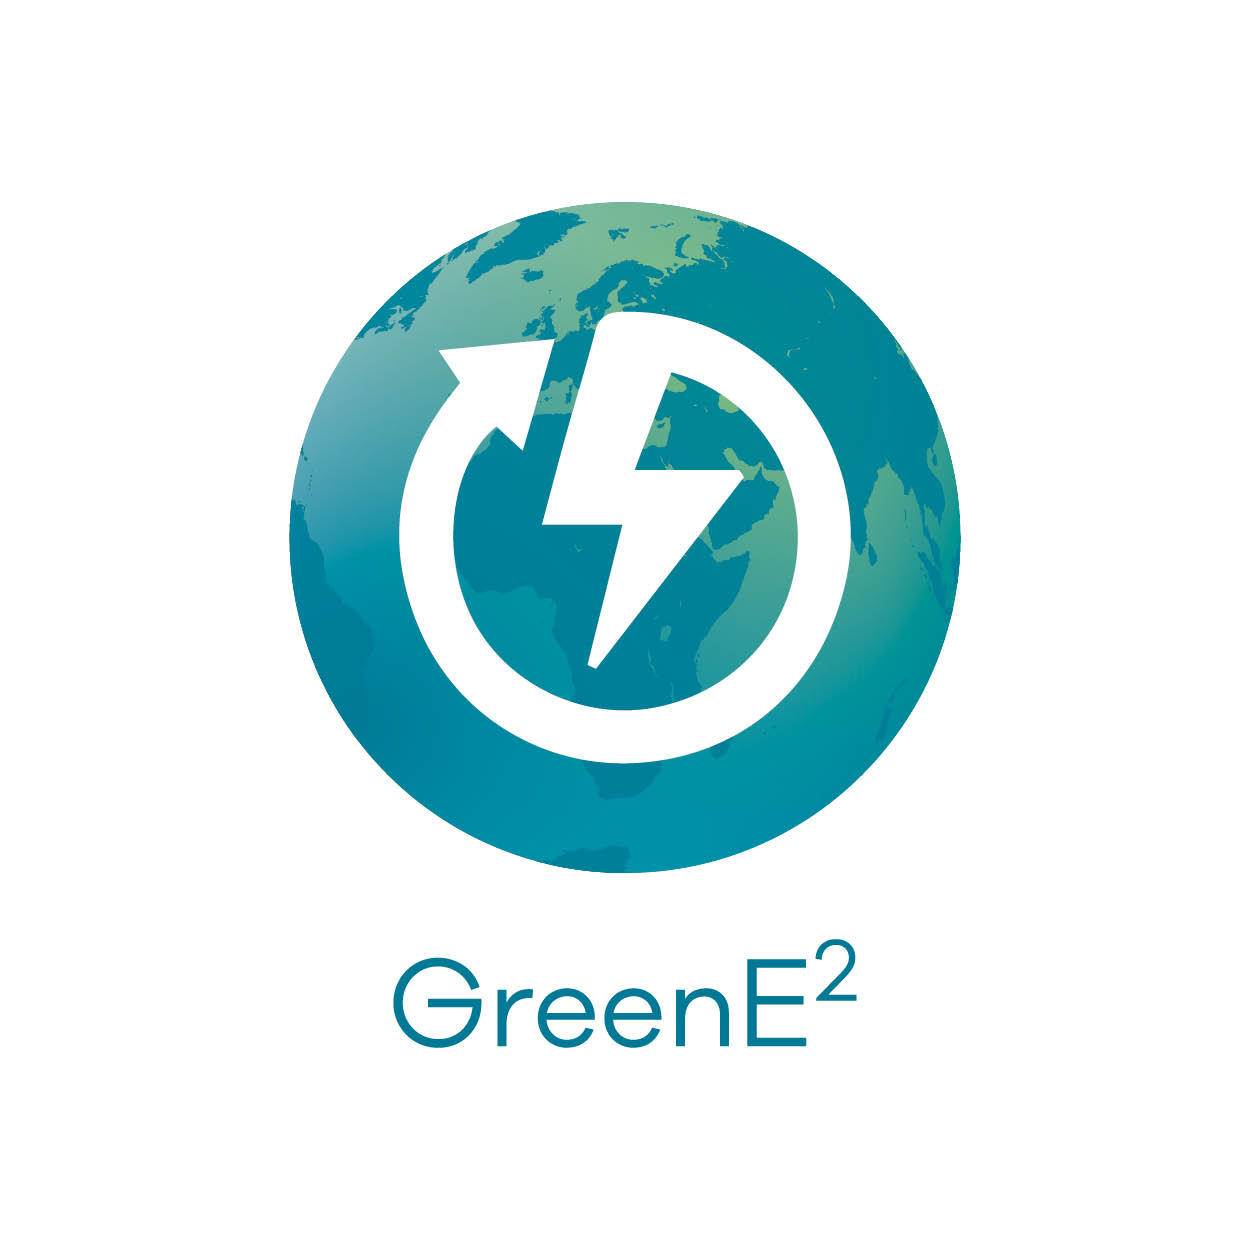 GreenE2 Logo.